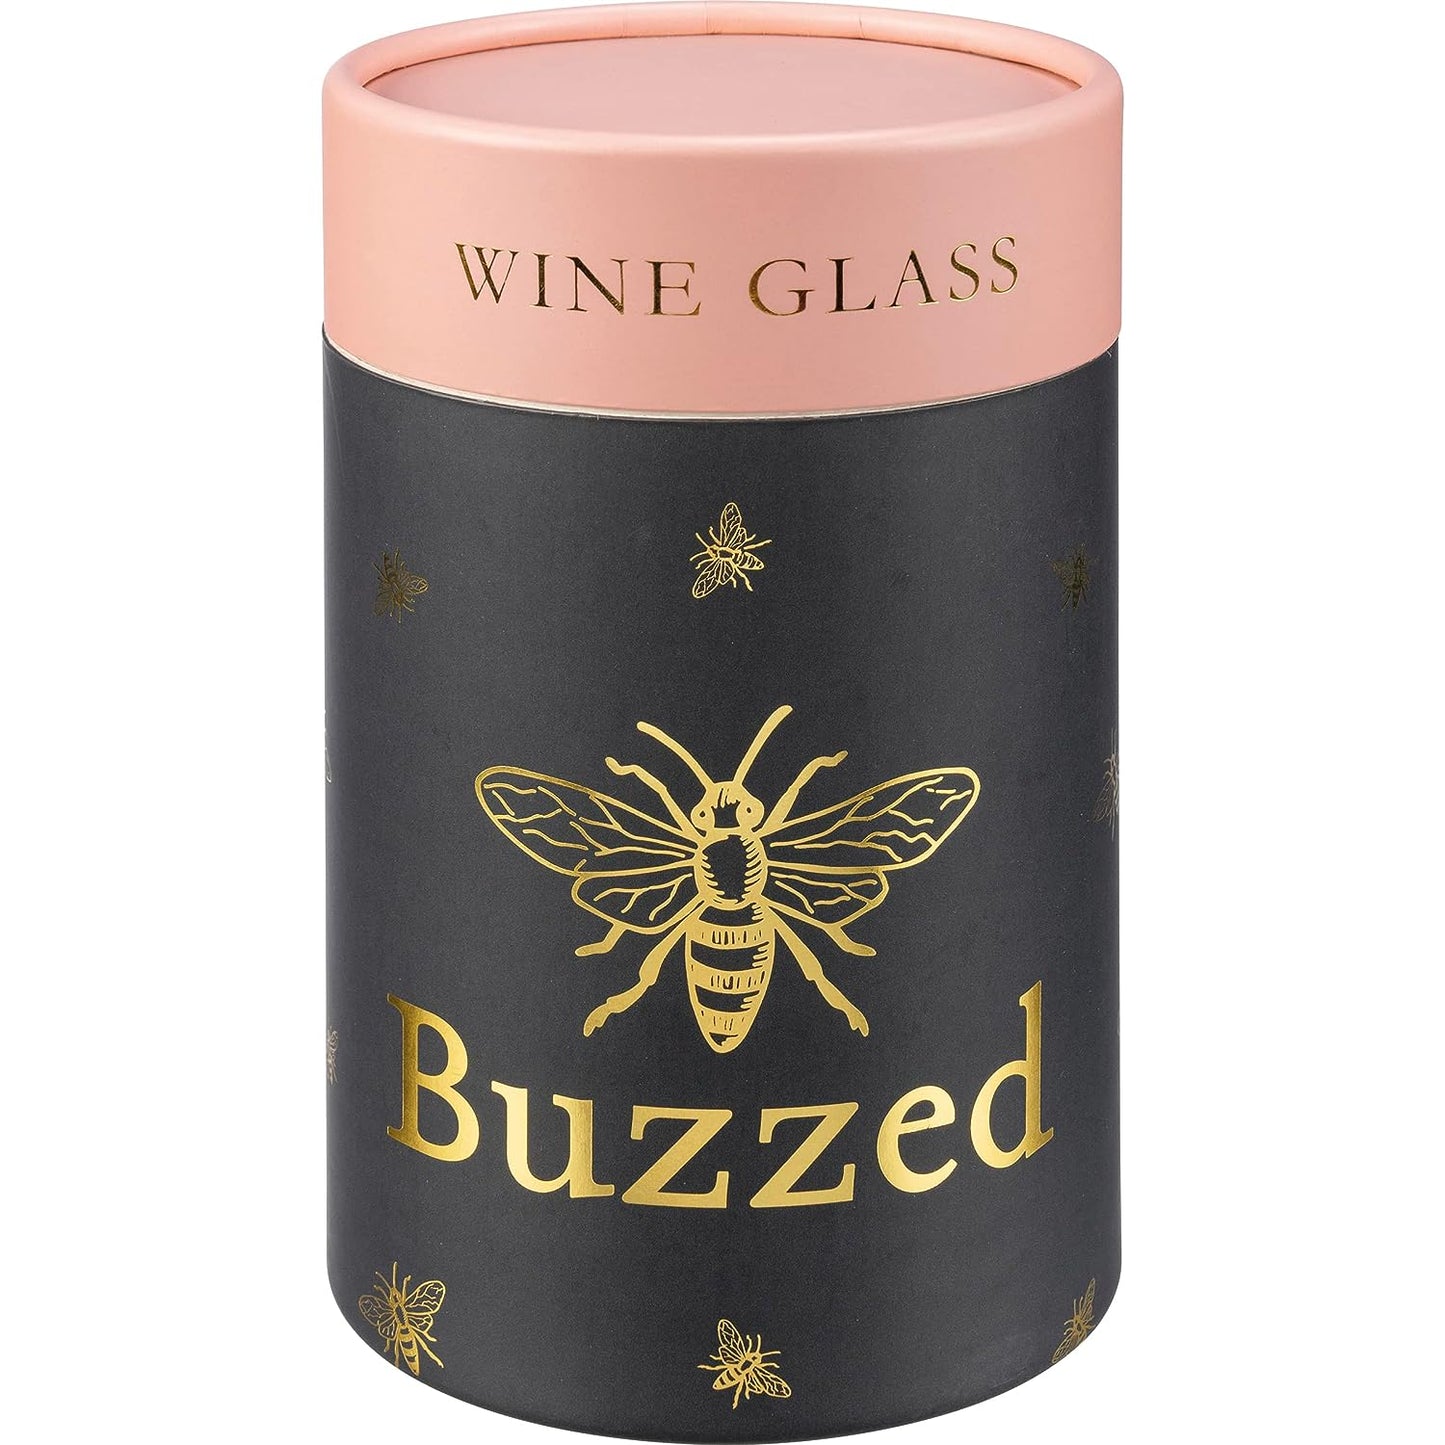 Buzzed Wine Glass